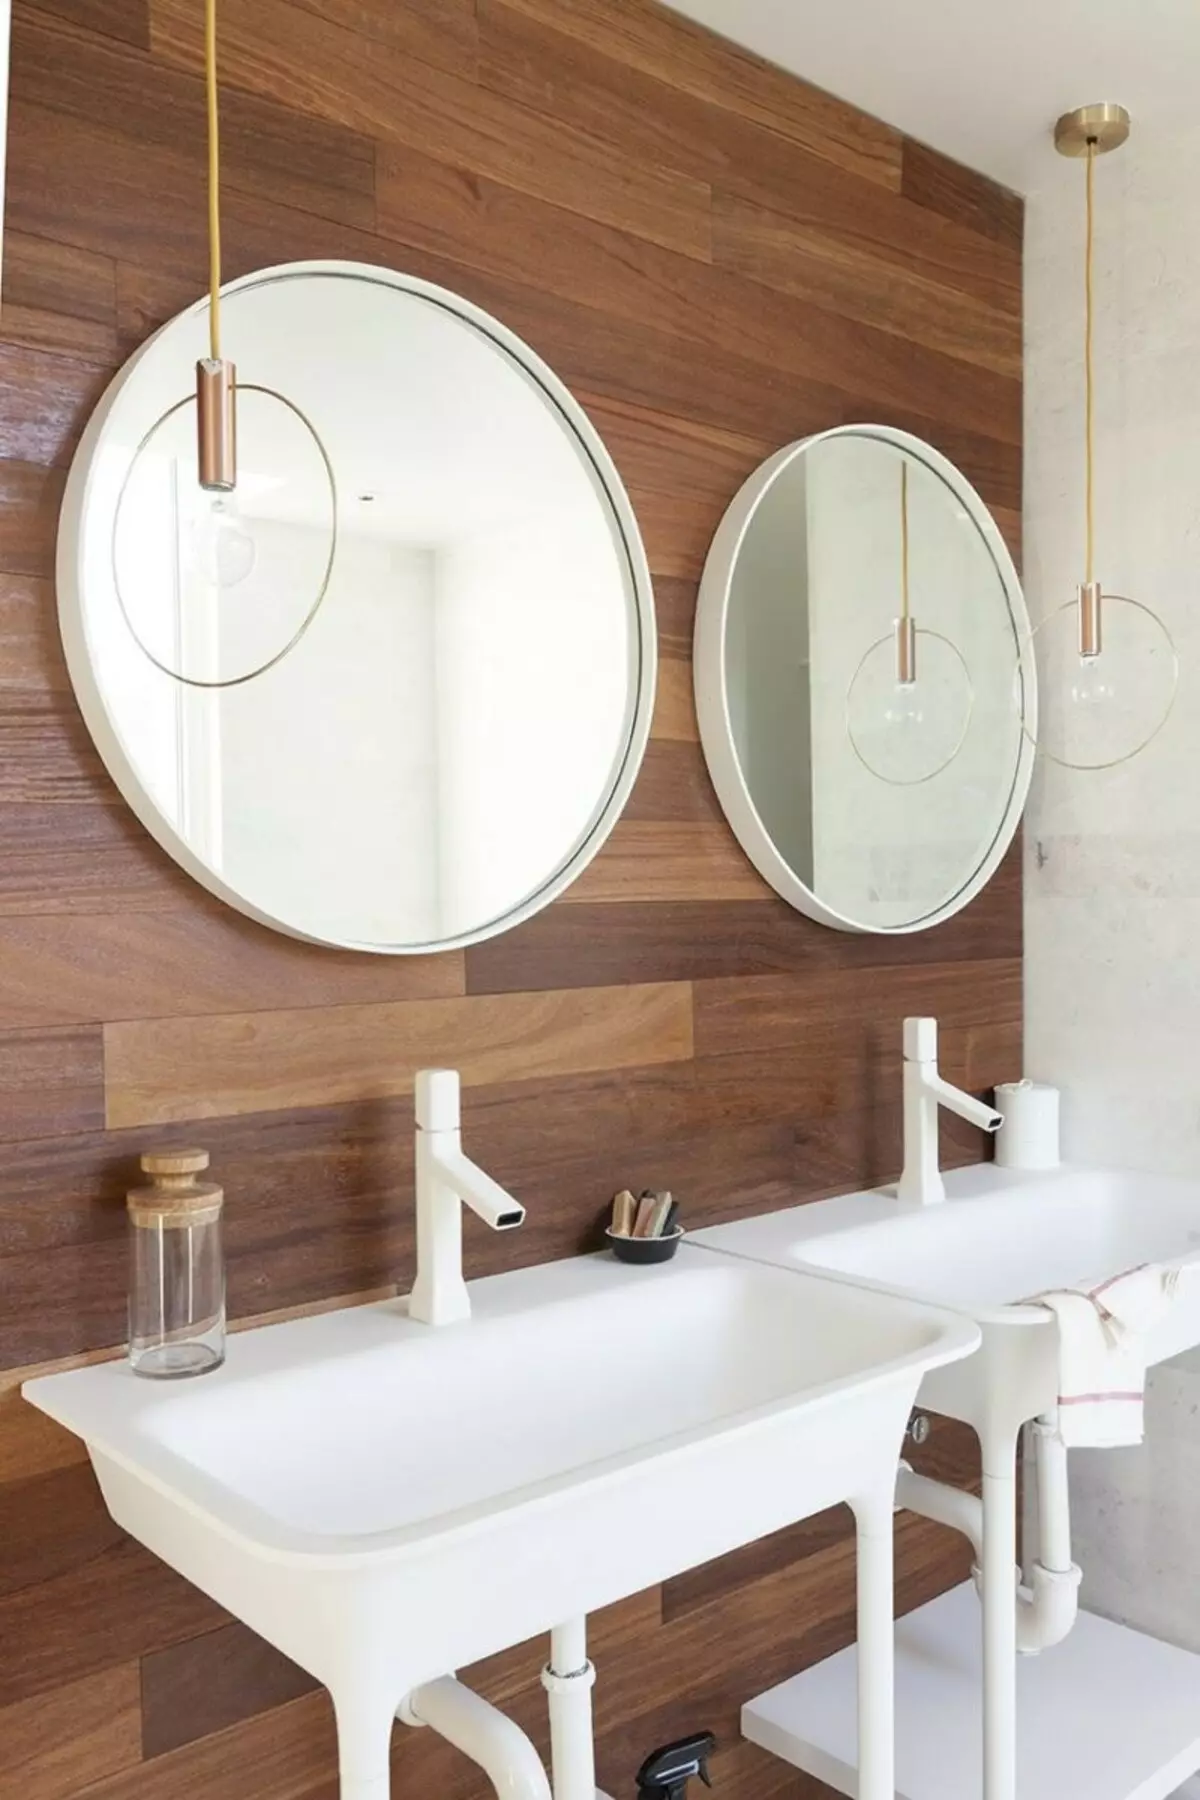 Miroir rond dans la salle de bain: miroirs design dans un cadre en bois, miroirs ronds de couleur noire et autre pour la salle de bain 10427_49